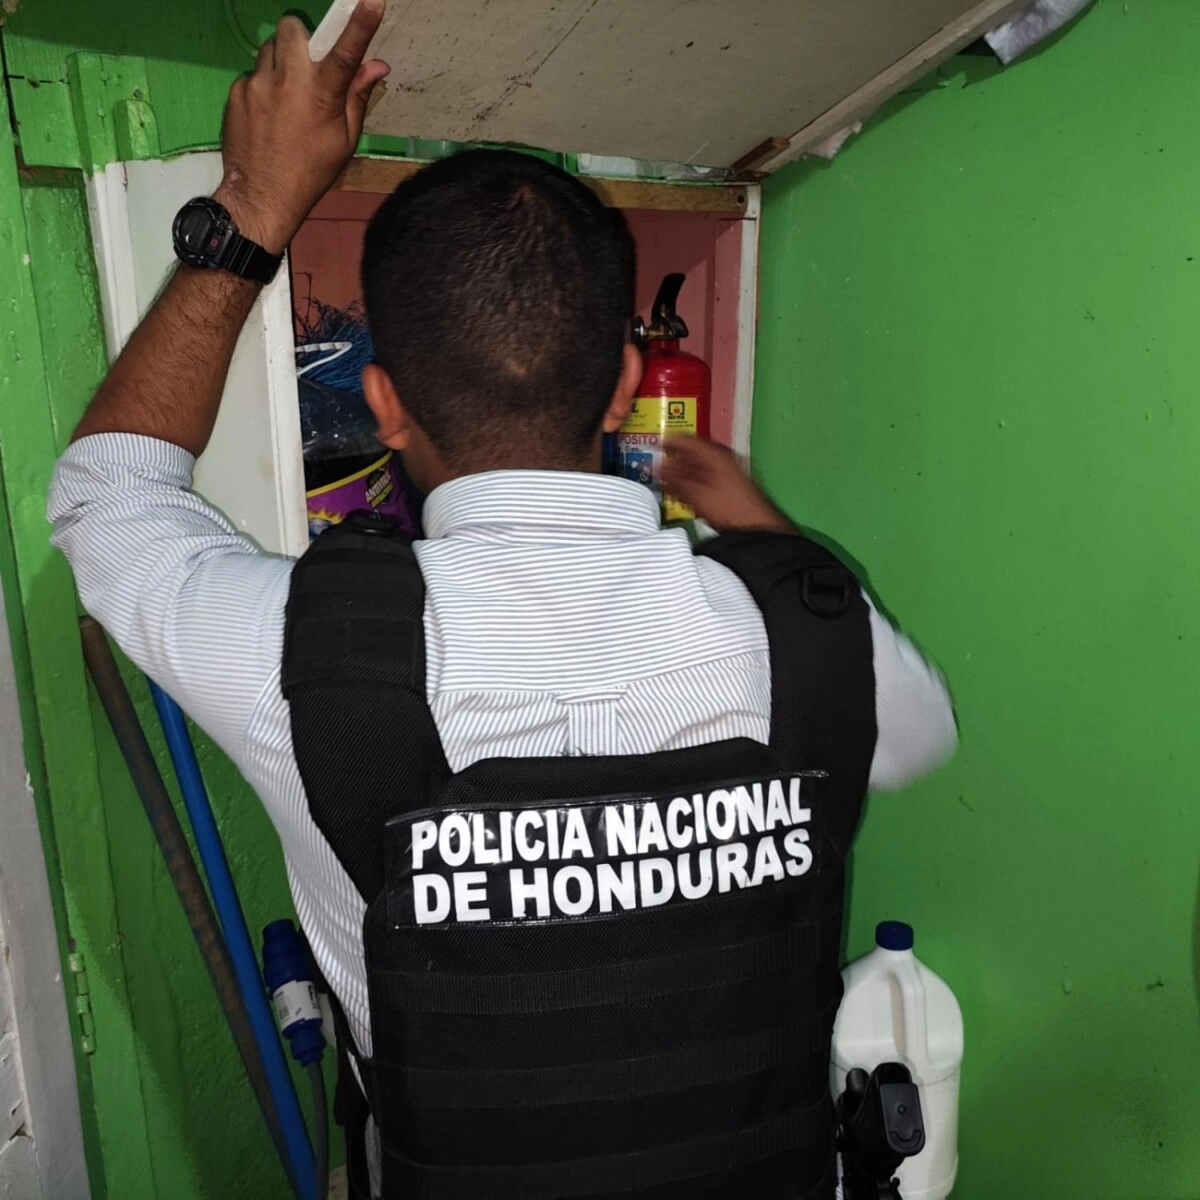 En La Ceiba, mediante una fuerte requisa se decomisaron varios objetos ilegales y una gran cantidad de estupefacientes 01